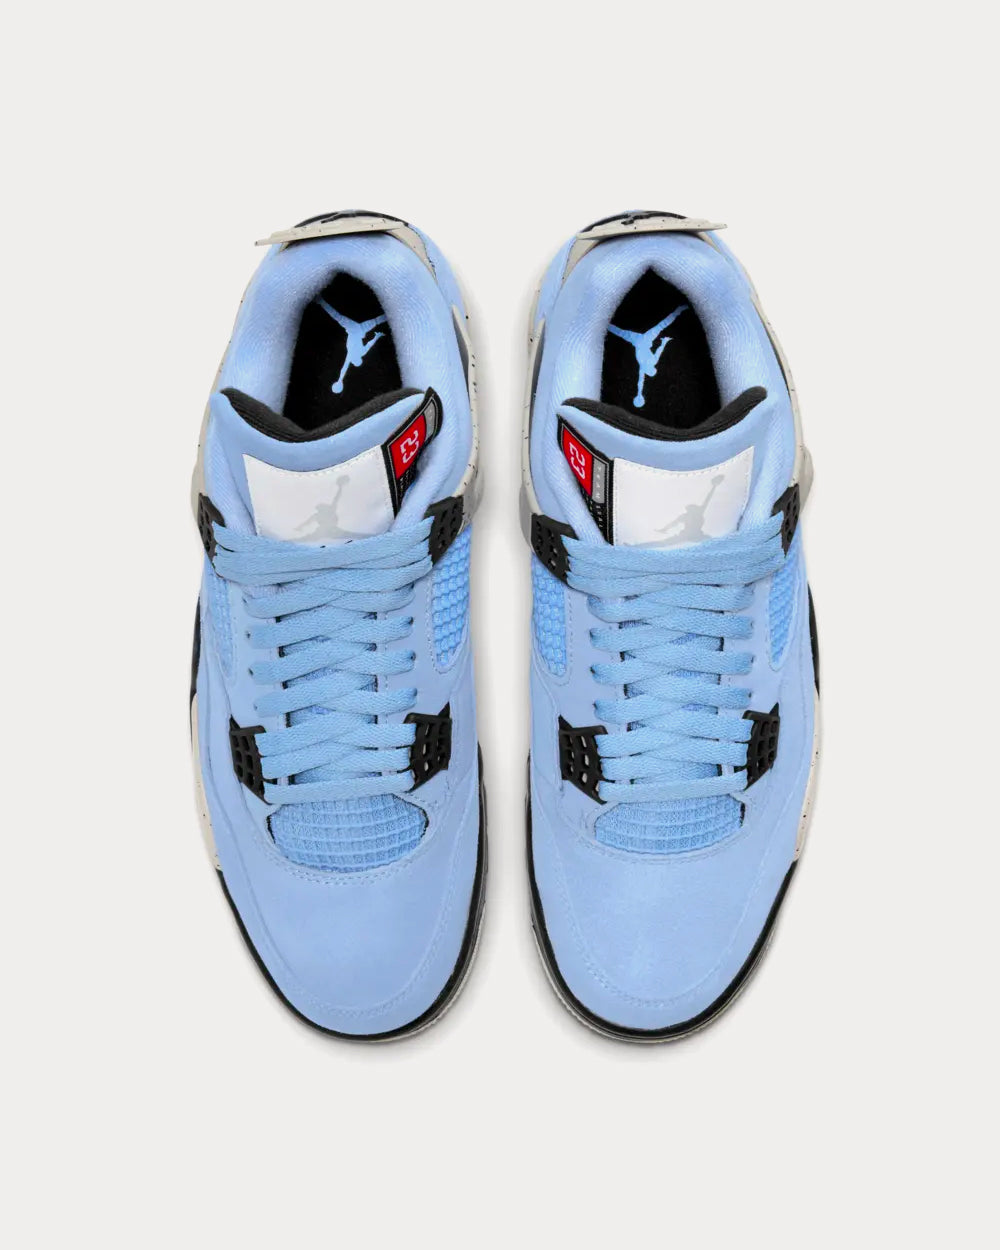 Jordan Air Jordan 4 University Blue Low Top Sneakers - Sneak in Peace